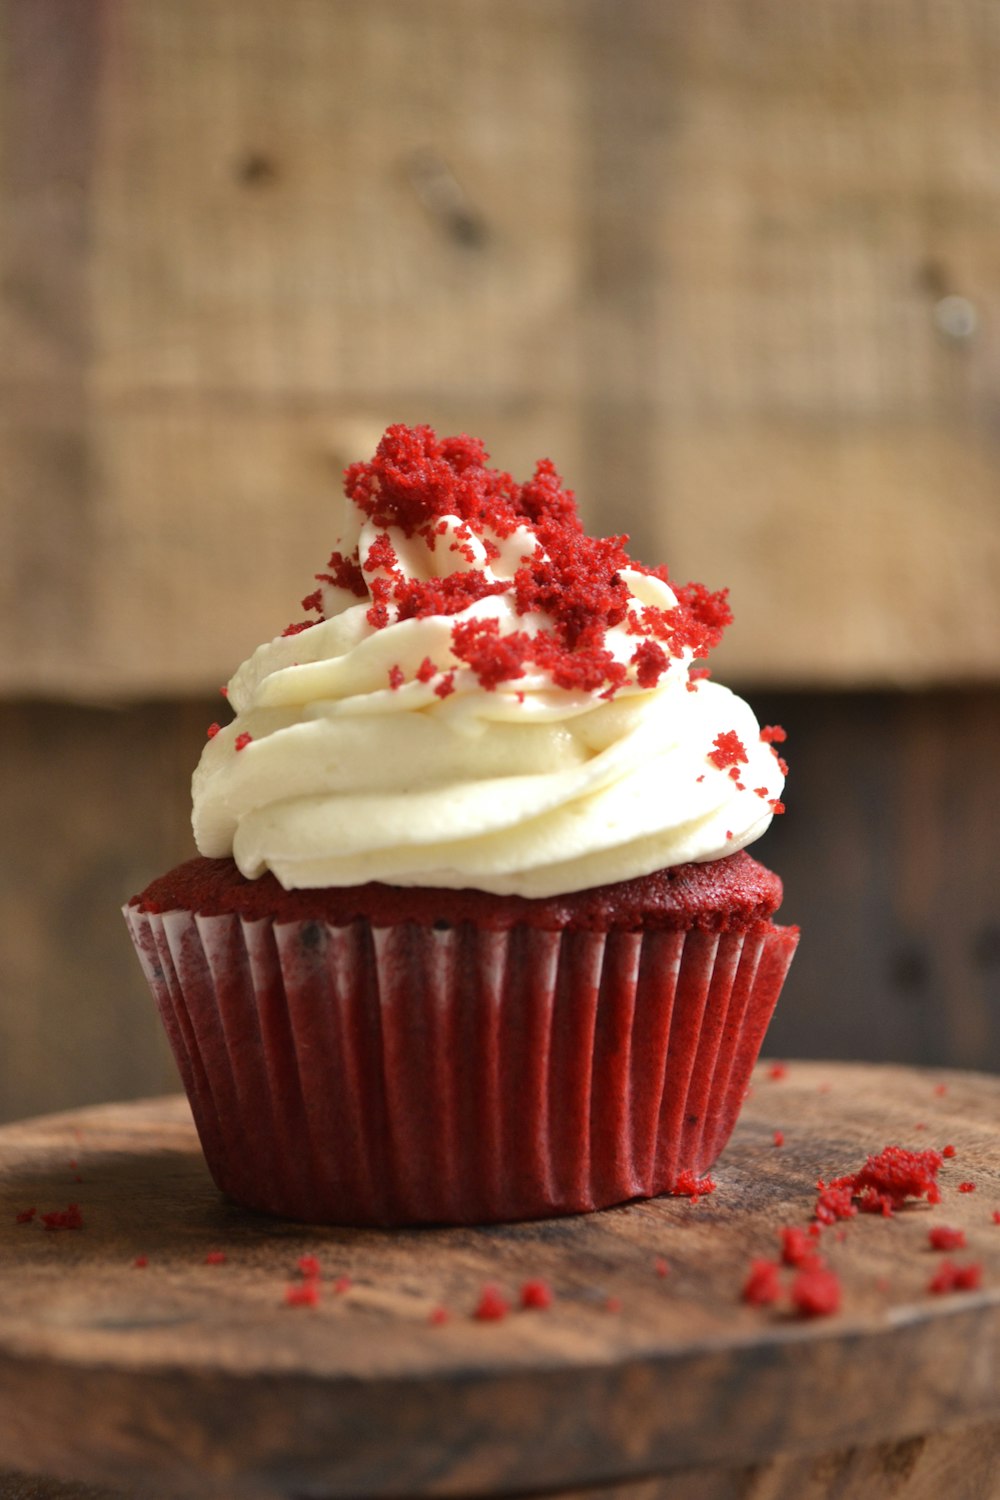 cupcake blanc et rouge avec glaçage blanc sur le dessus